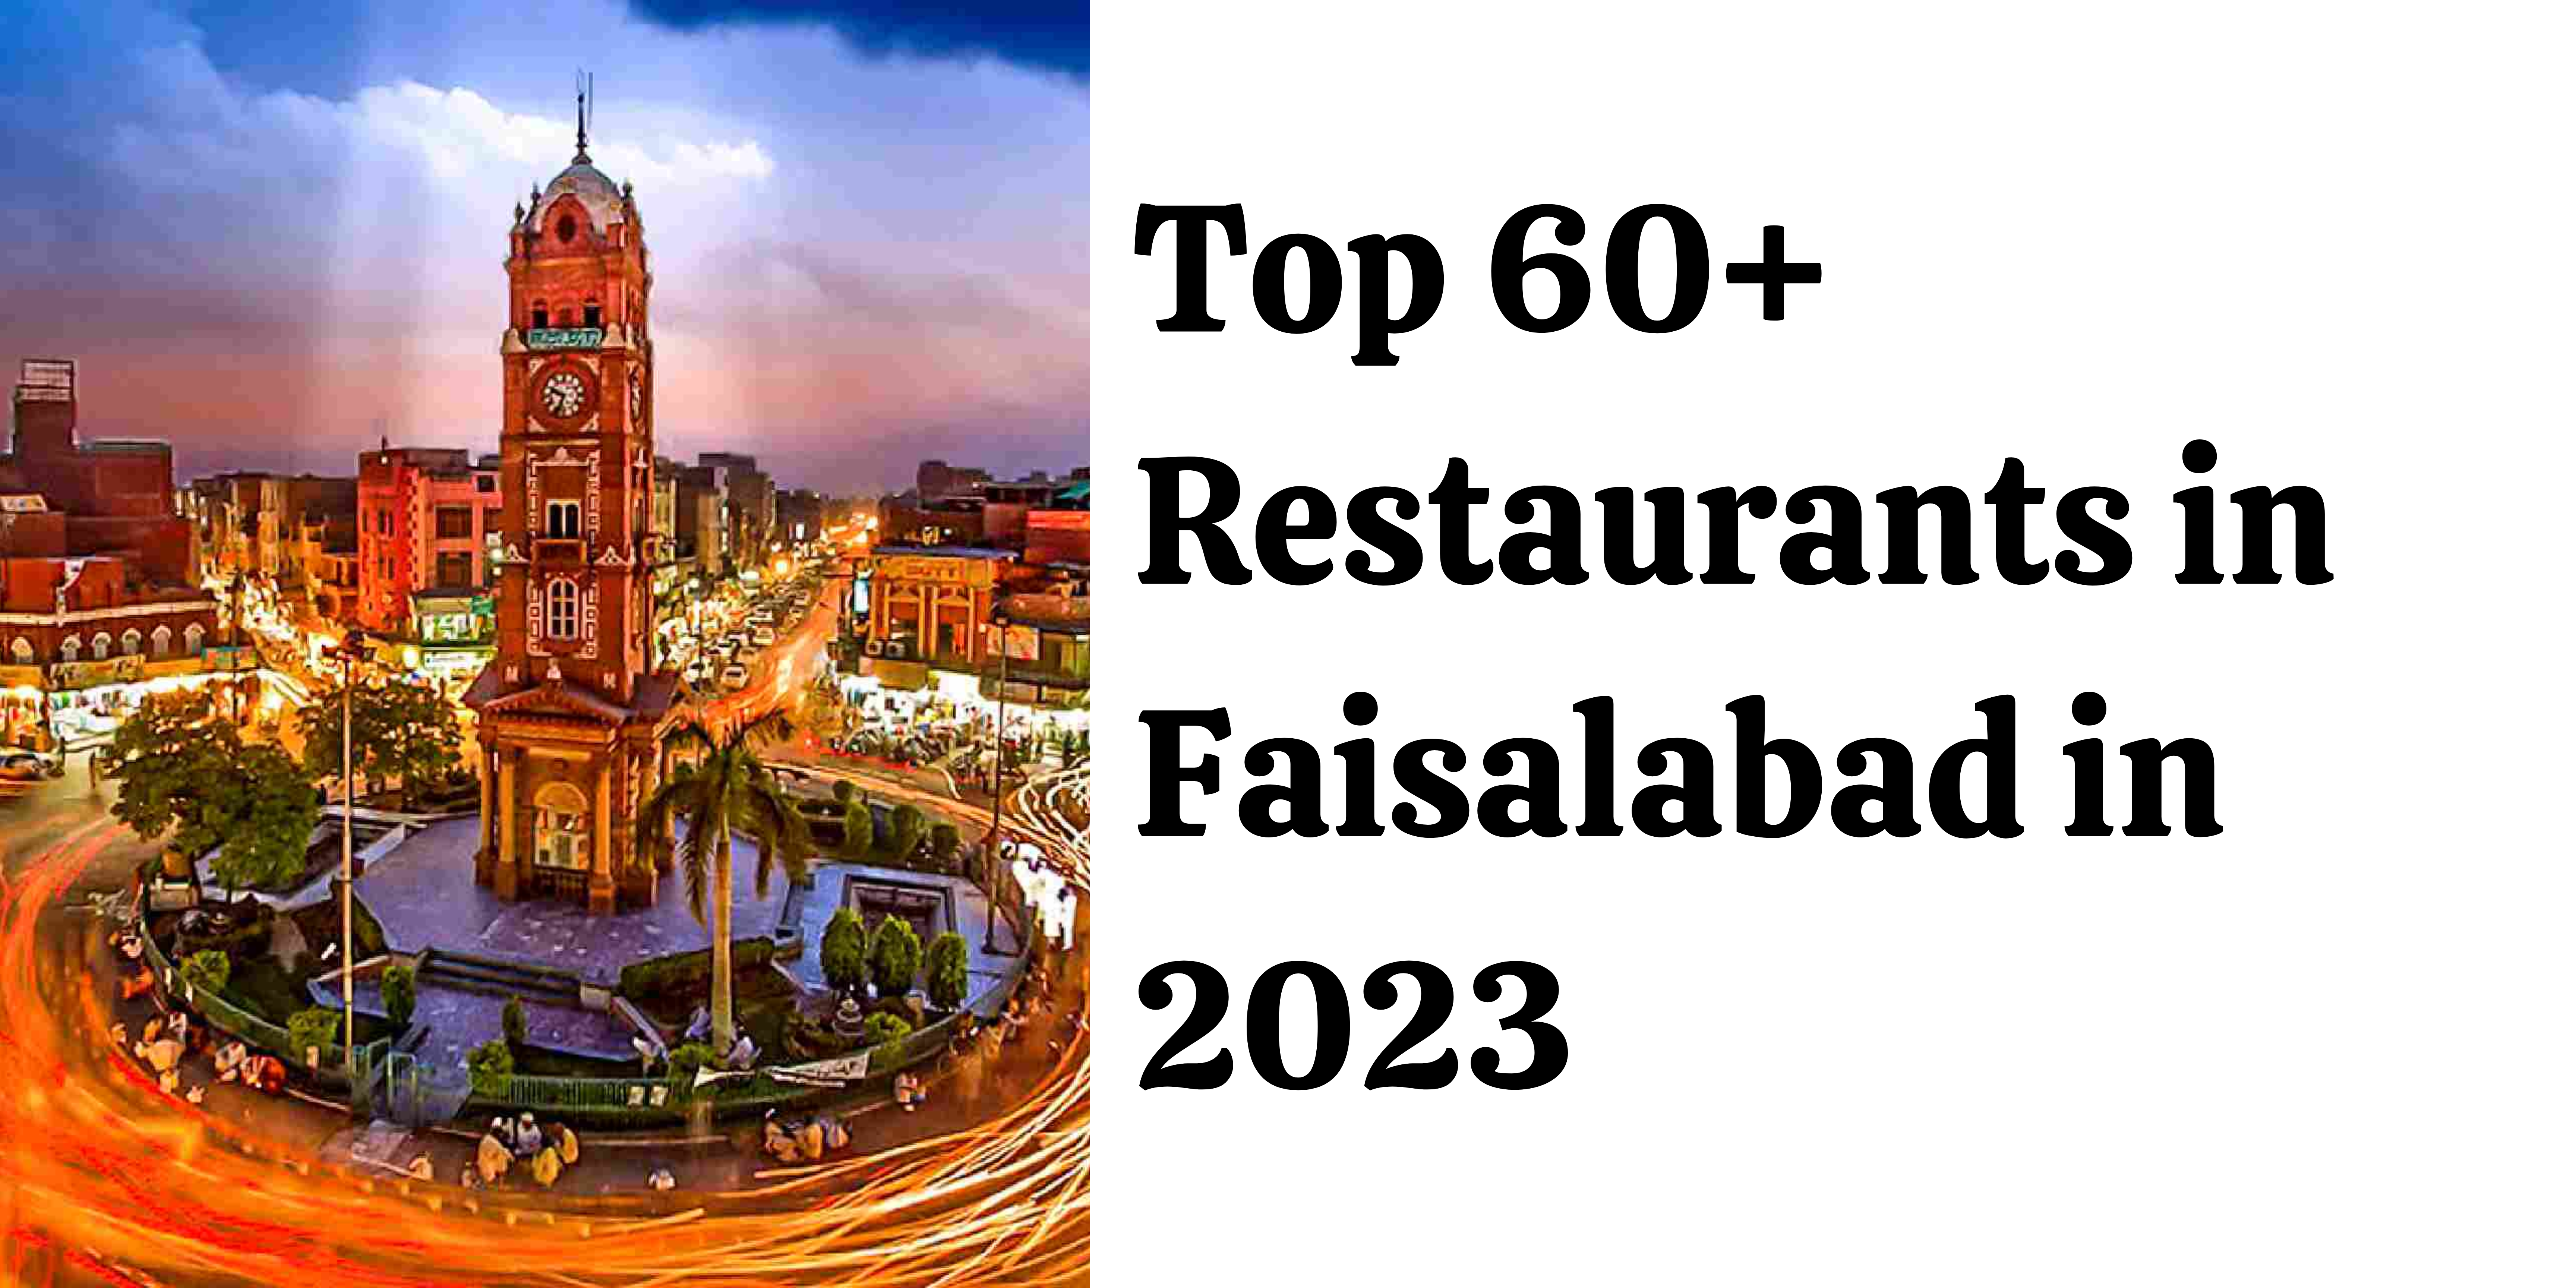 Top 60+ Restaurants in Faisalabad in 2023